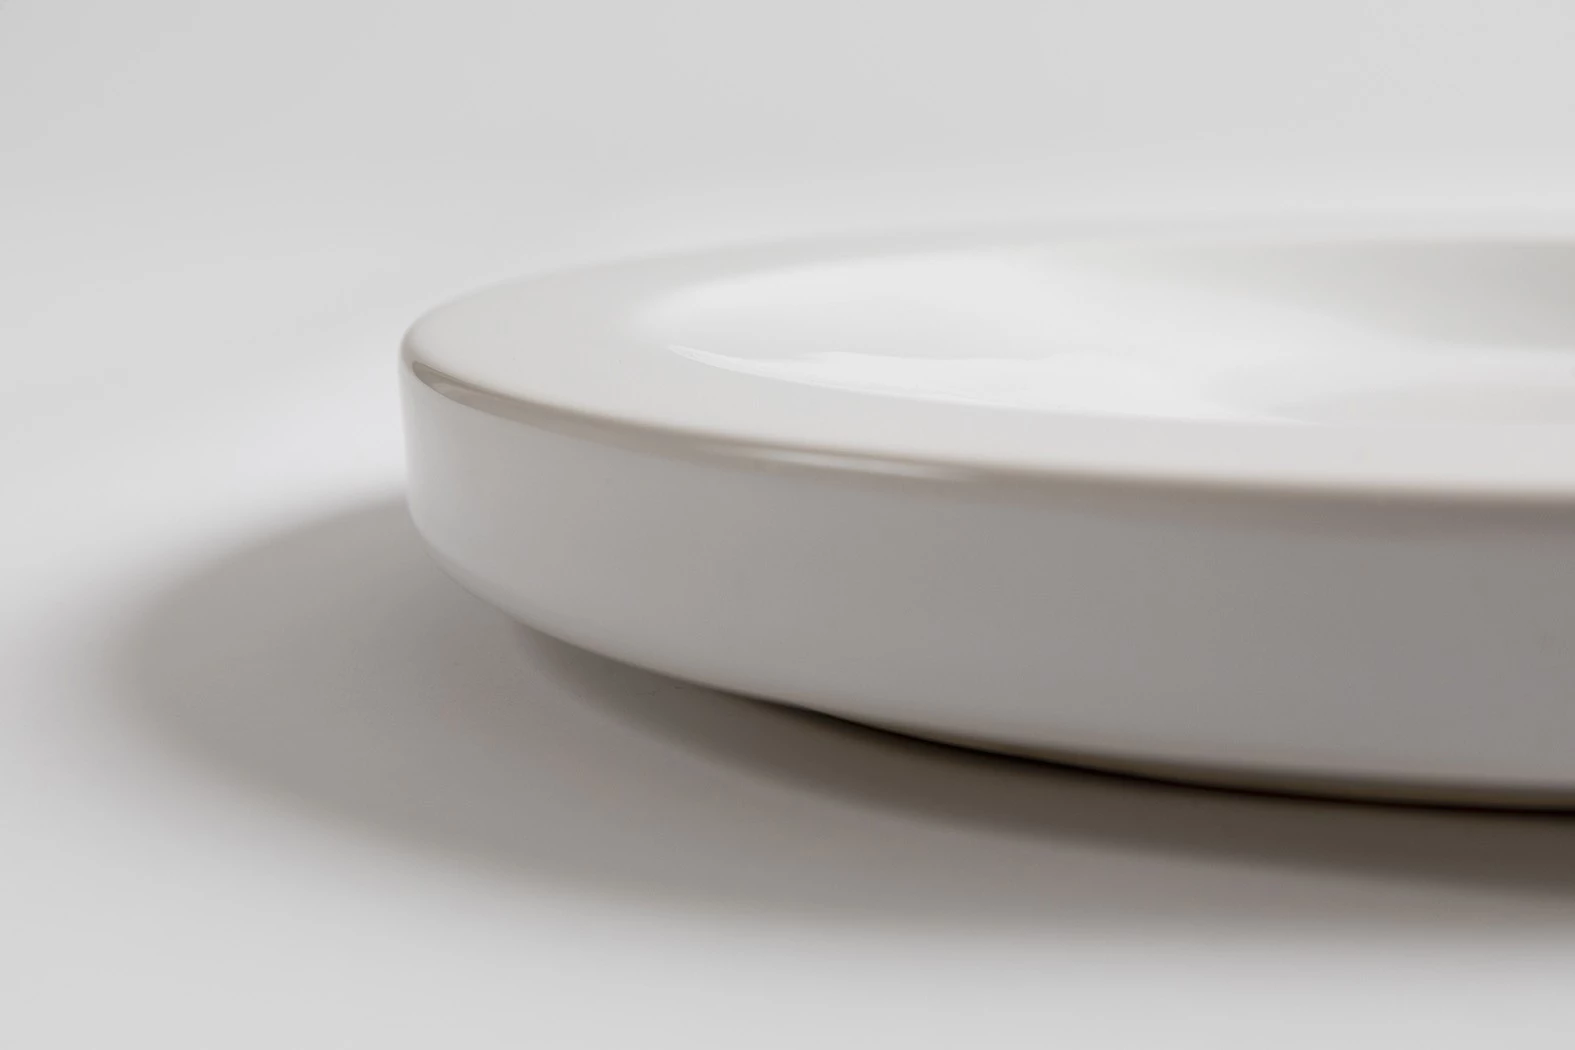 Small Round - Jasper Morrison - Object - Galerie kreo